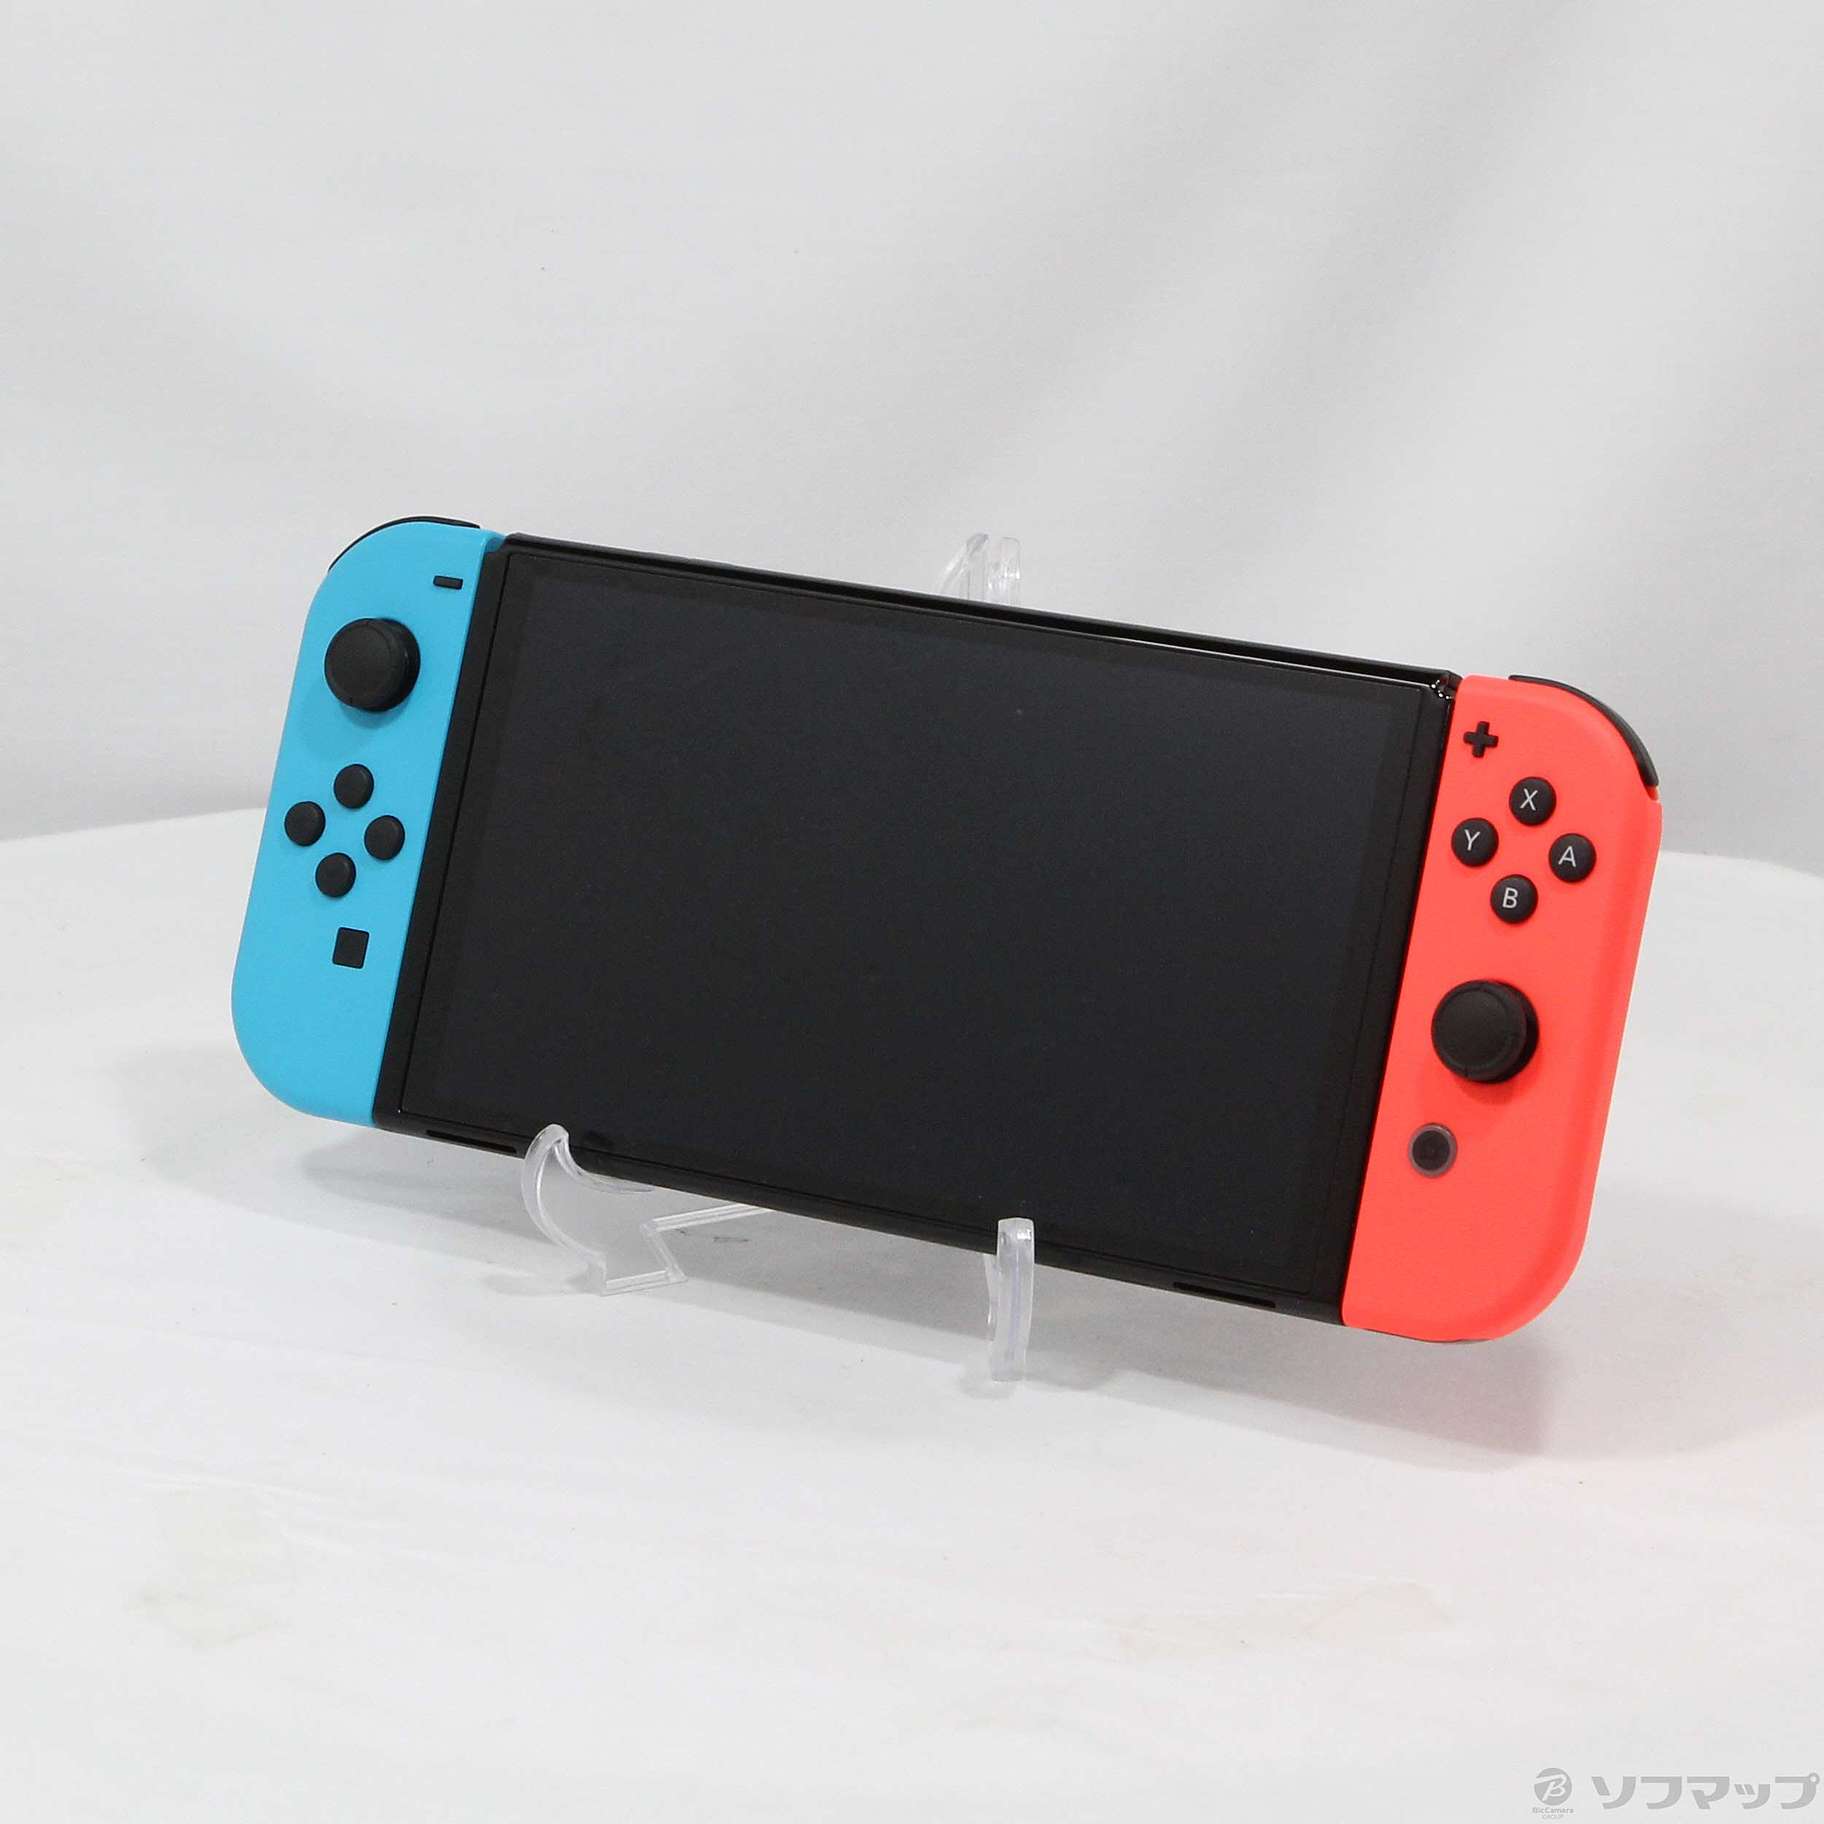 中古品〕 Nintendo Switch 有機ELモデル Joy-Con(L) ネオン